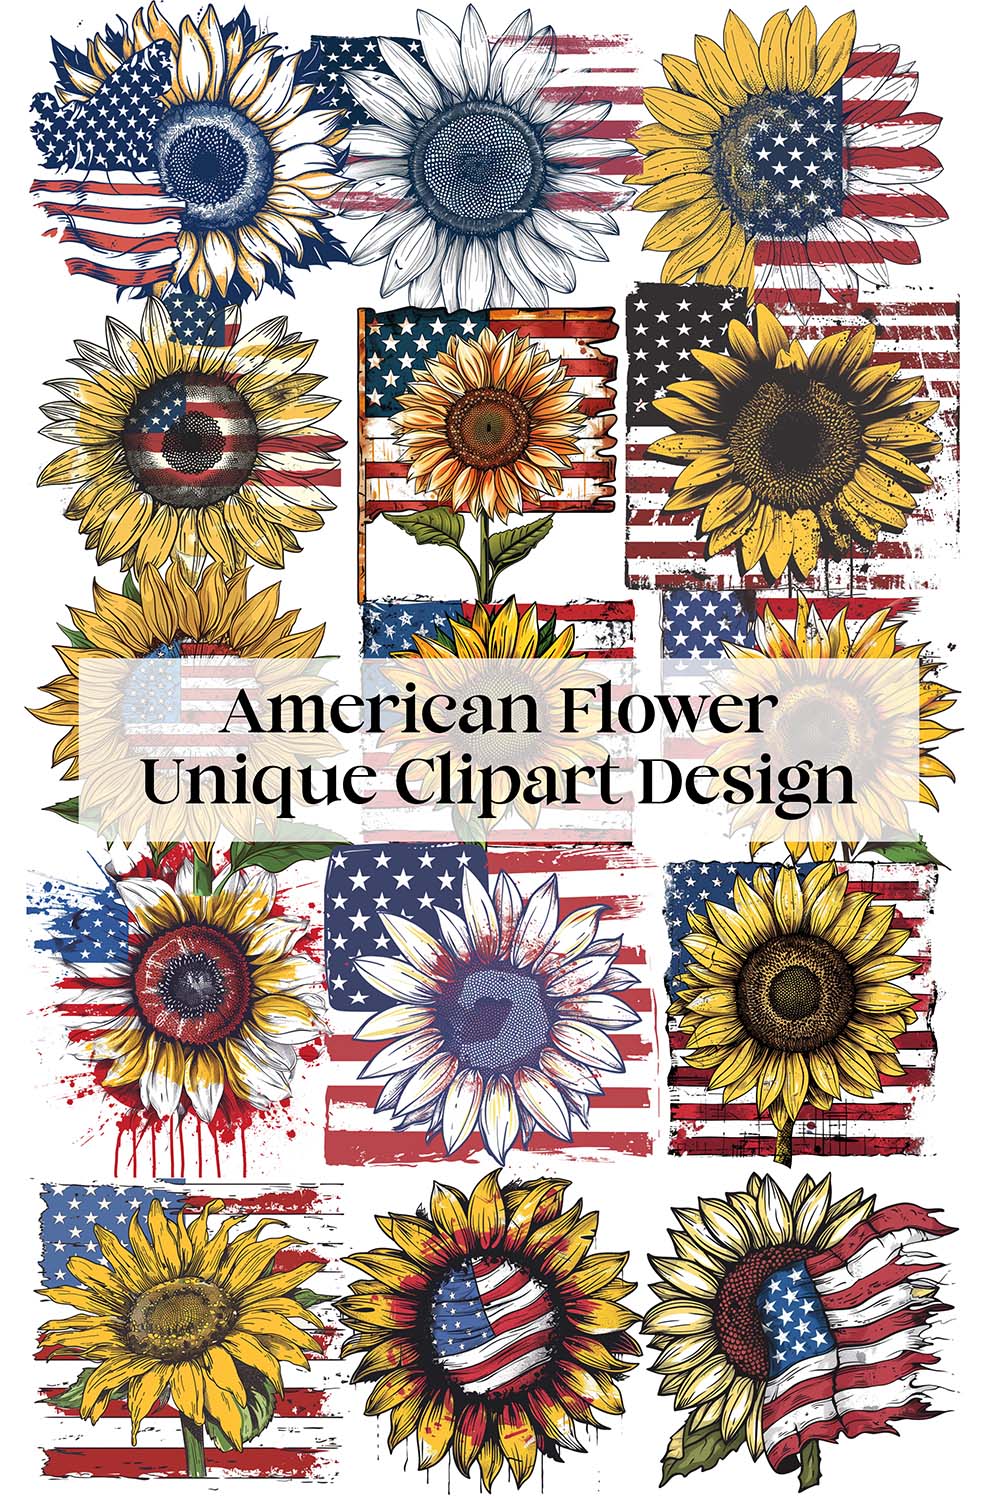 American Flower Unique Clipart Design pinterest preview image.